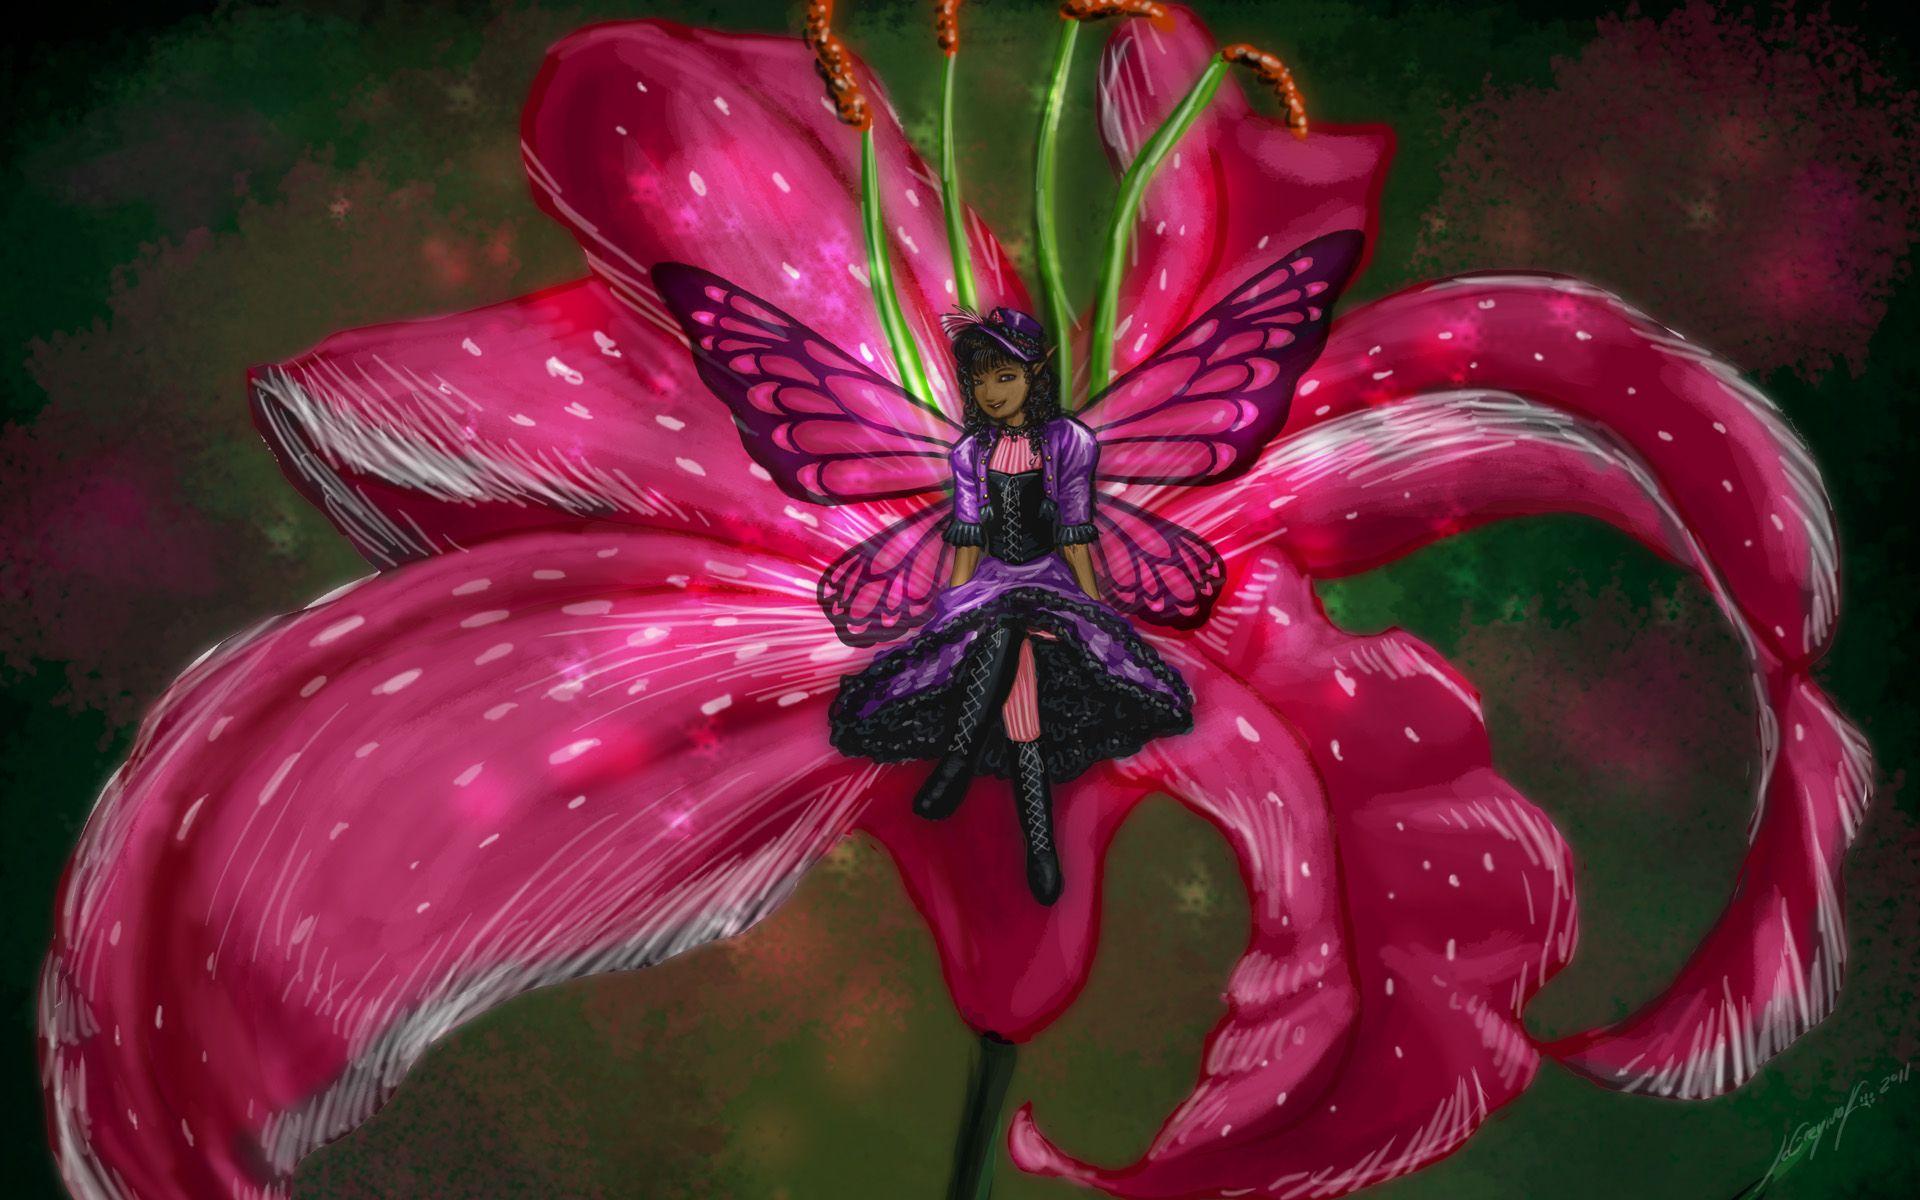 Purple Butterfly Fairy Wallpaper